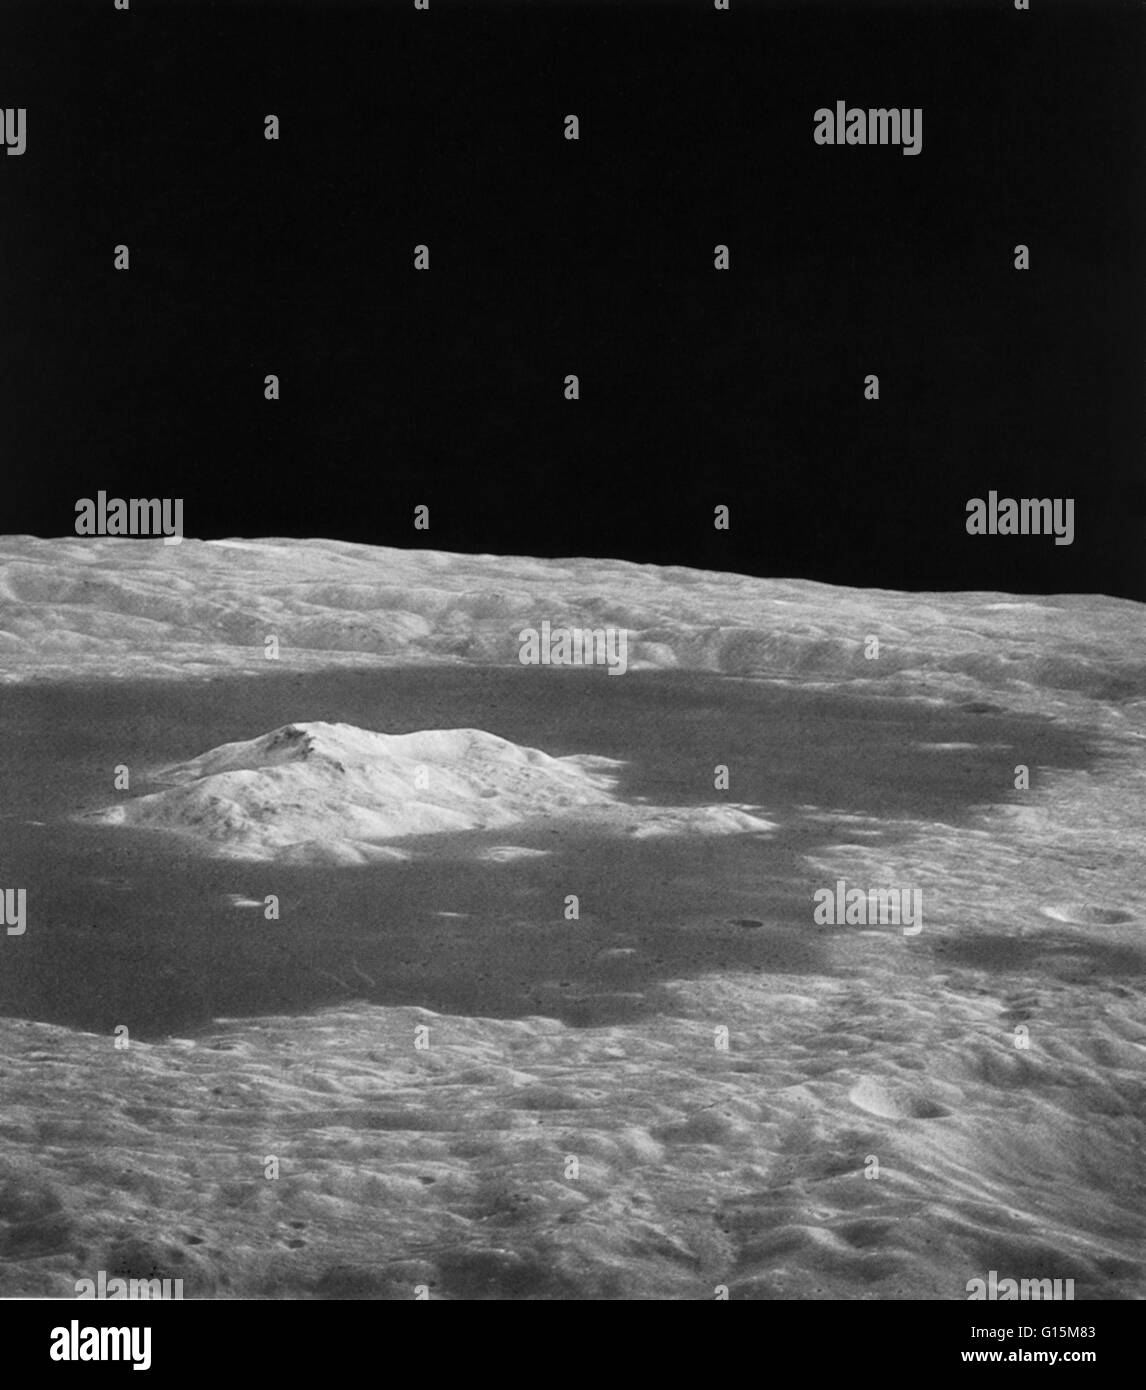 Tsiolkovsky cratère sur la Lune, prises d'Apollo 15. La mission a commencé le 26 juillet 1971, et a conclu le 7 août. Banque D'Images